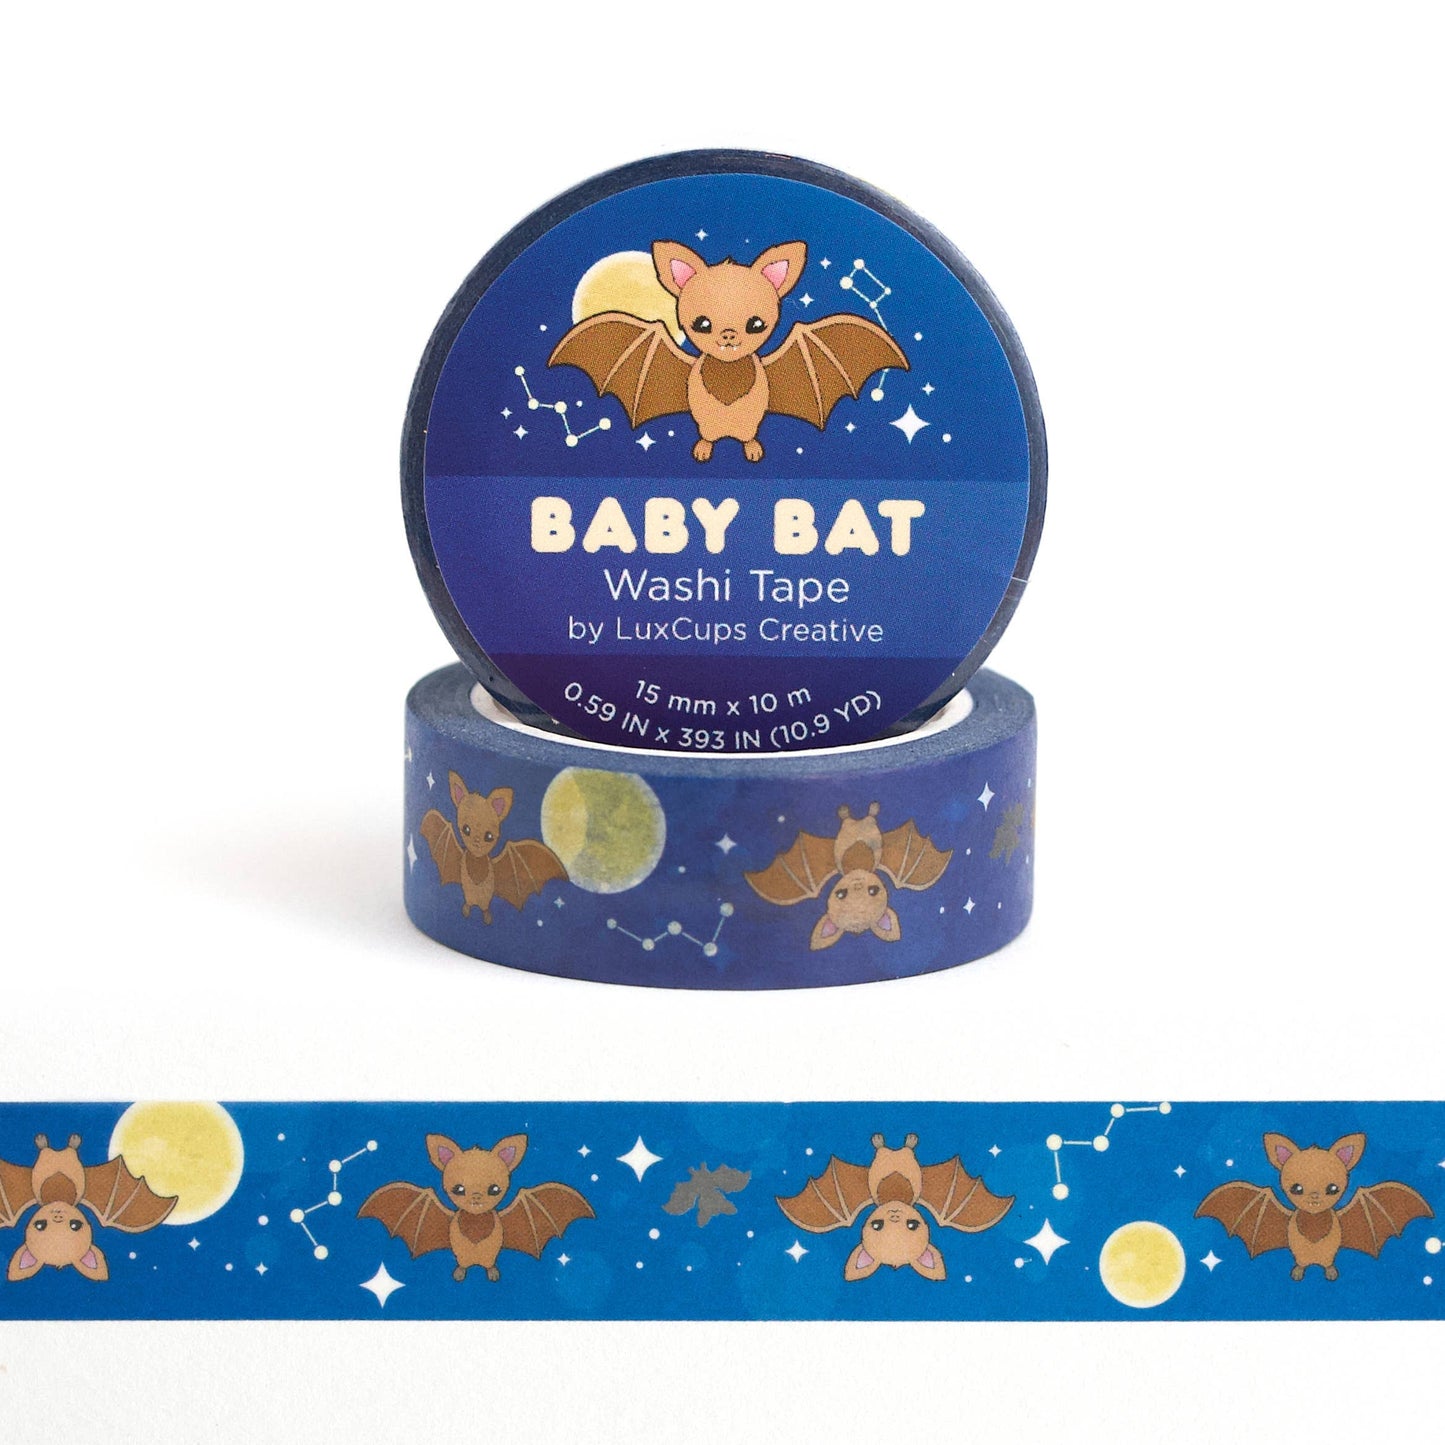 Baby Bat Washi Tape